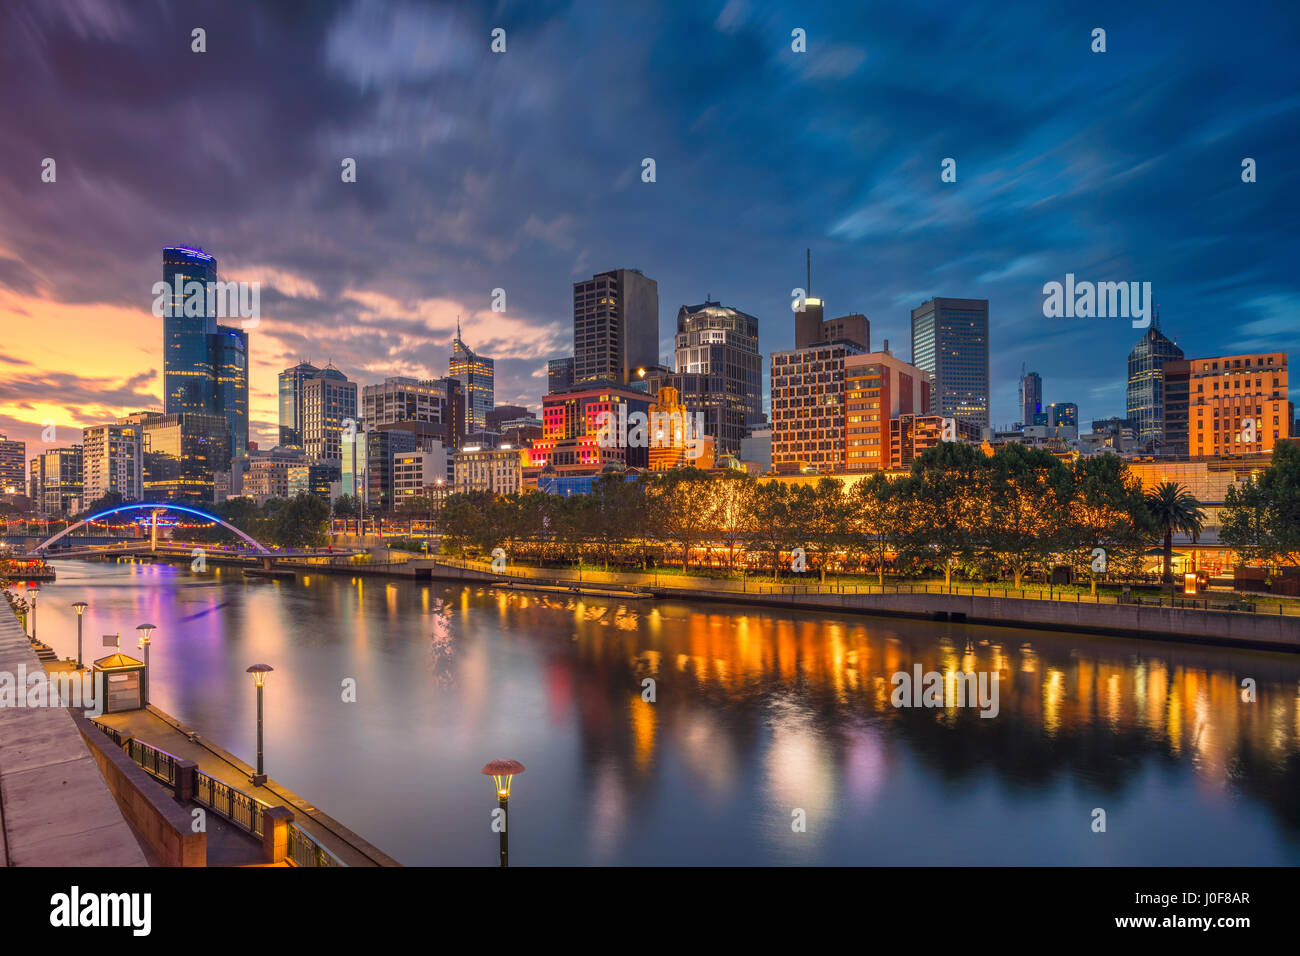 Stadt von Melbourne. Stadtbild Bild von Melbourne während der dramatischen Sonnenuntergang. Stockfoto